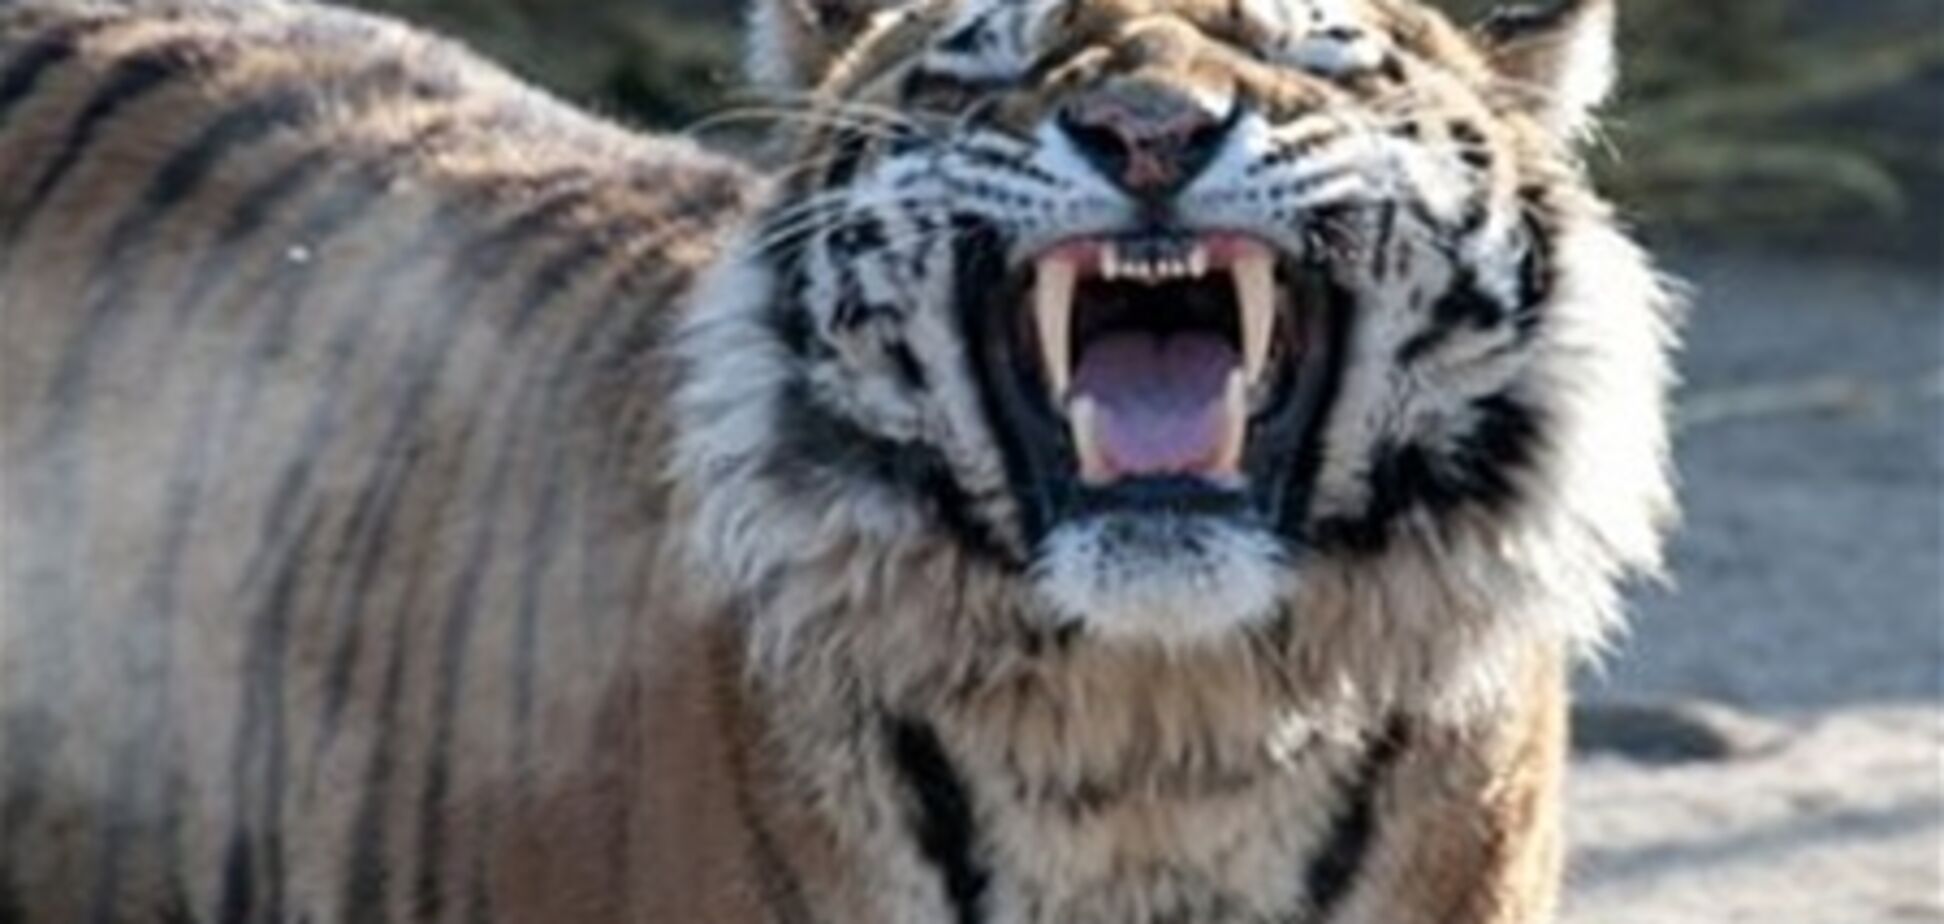 В грузинском зоопарке на безбилетного посетителя напал тигр